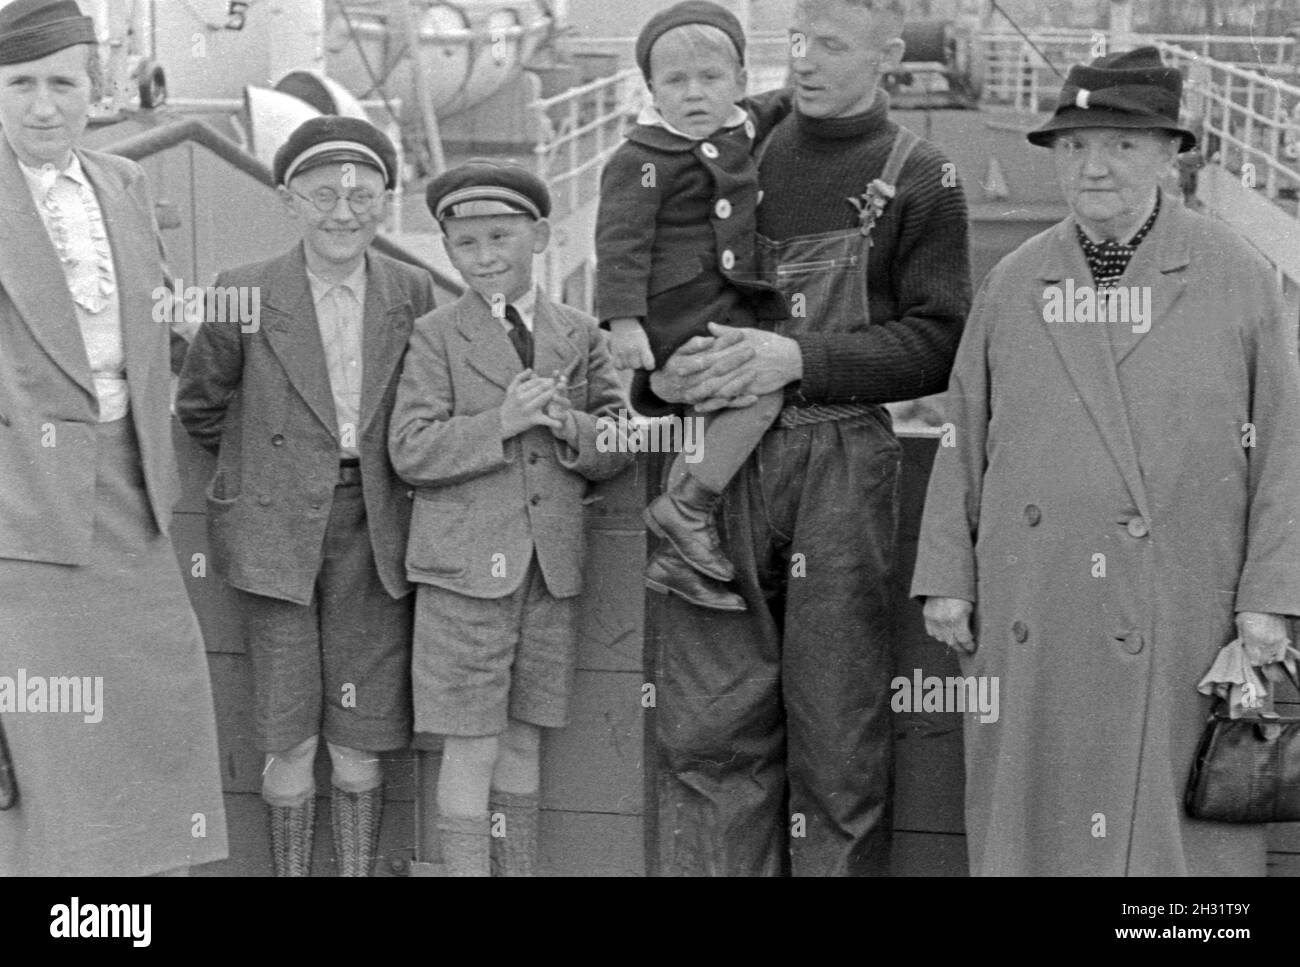 Ein Besatzungsmitglied des Fabrikschiffs 'Jan Wellem'messo circuizione Familie, 1930s. Un membro dell'equipaggio della nave officina 'Jan Wellem' del tedesco flotta baleniera wit la sua famiglia, 1930s. Foto Stock